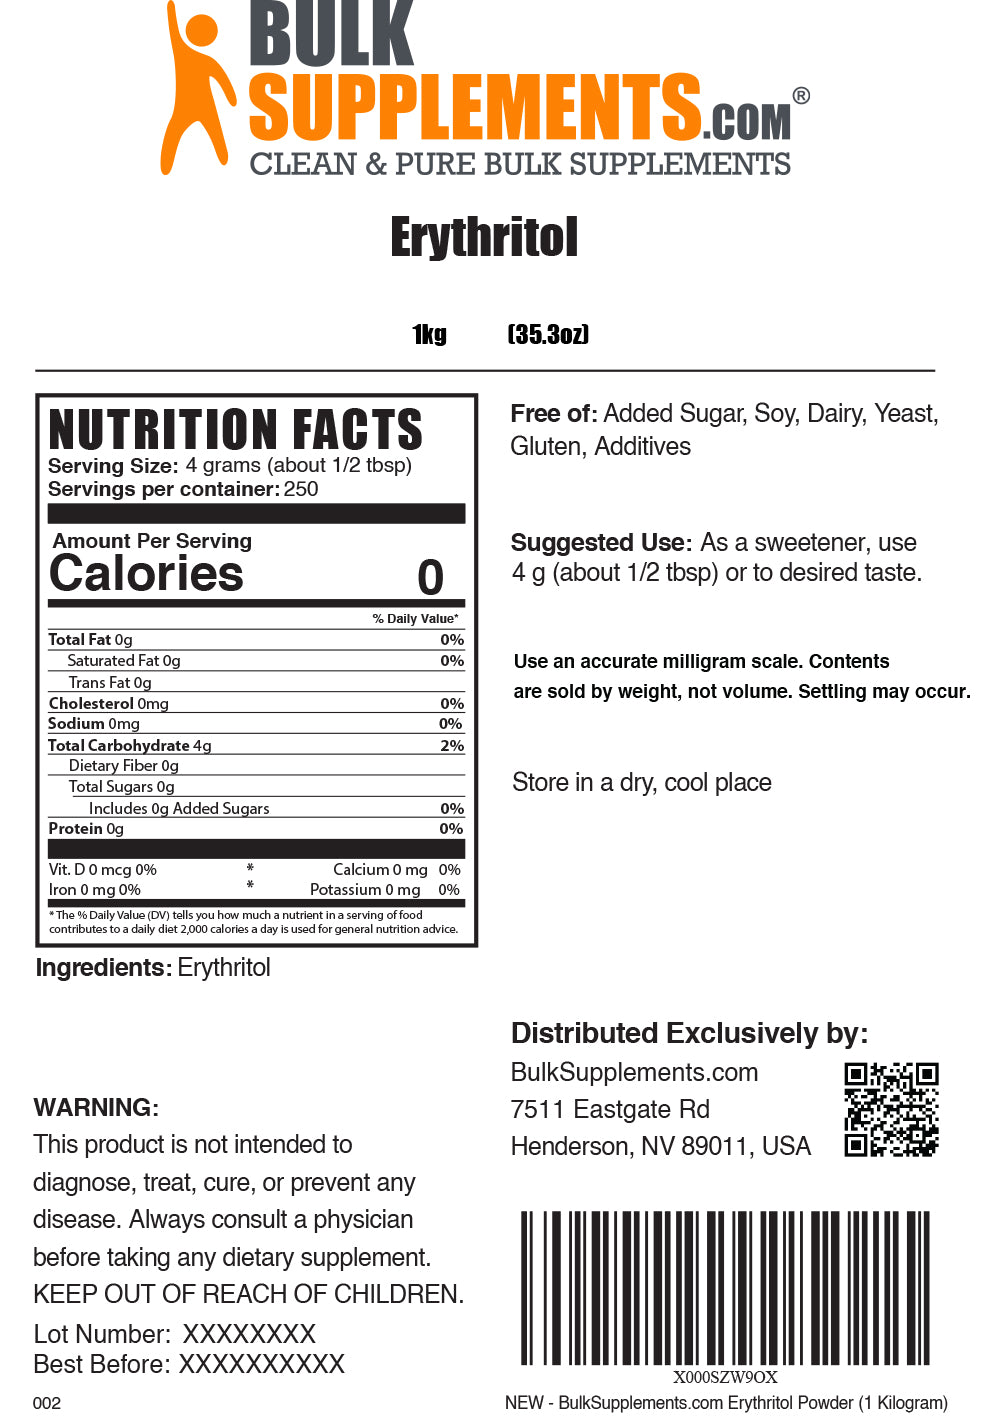 Erythritol Powder label 1kg